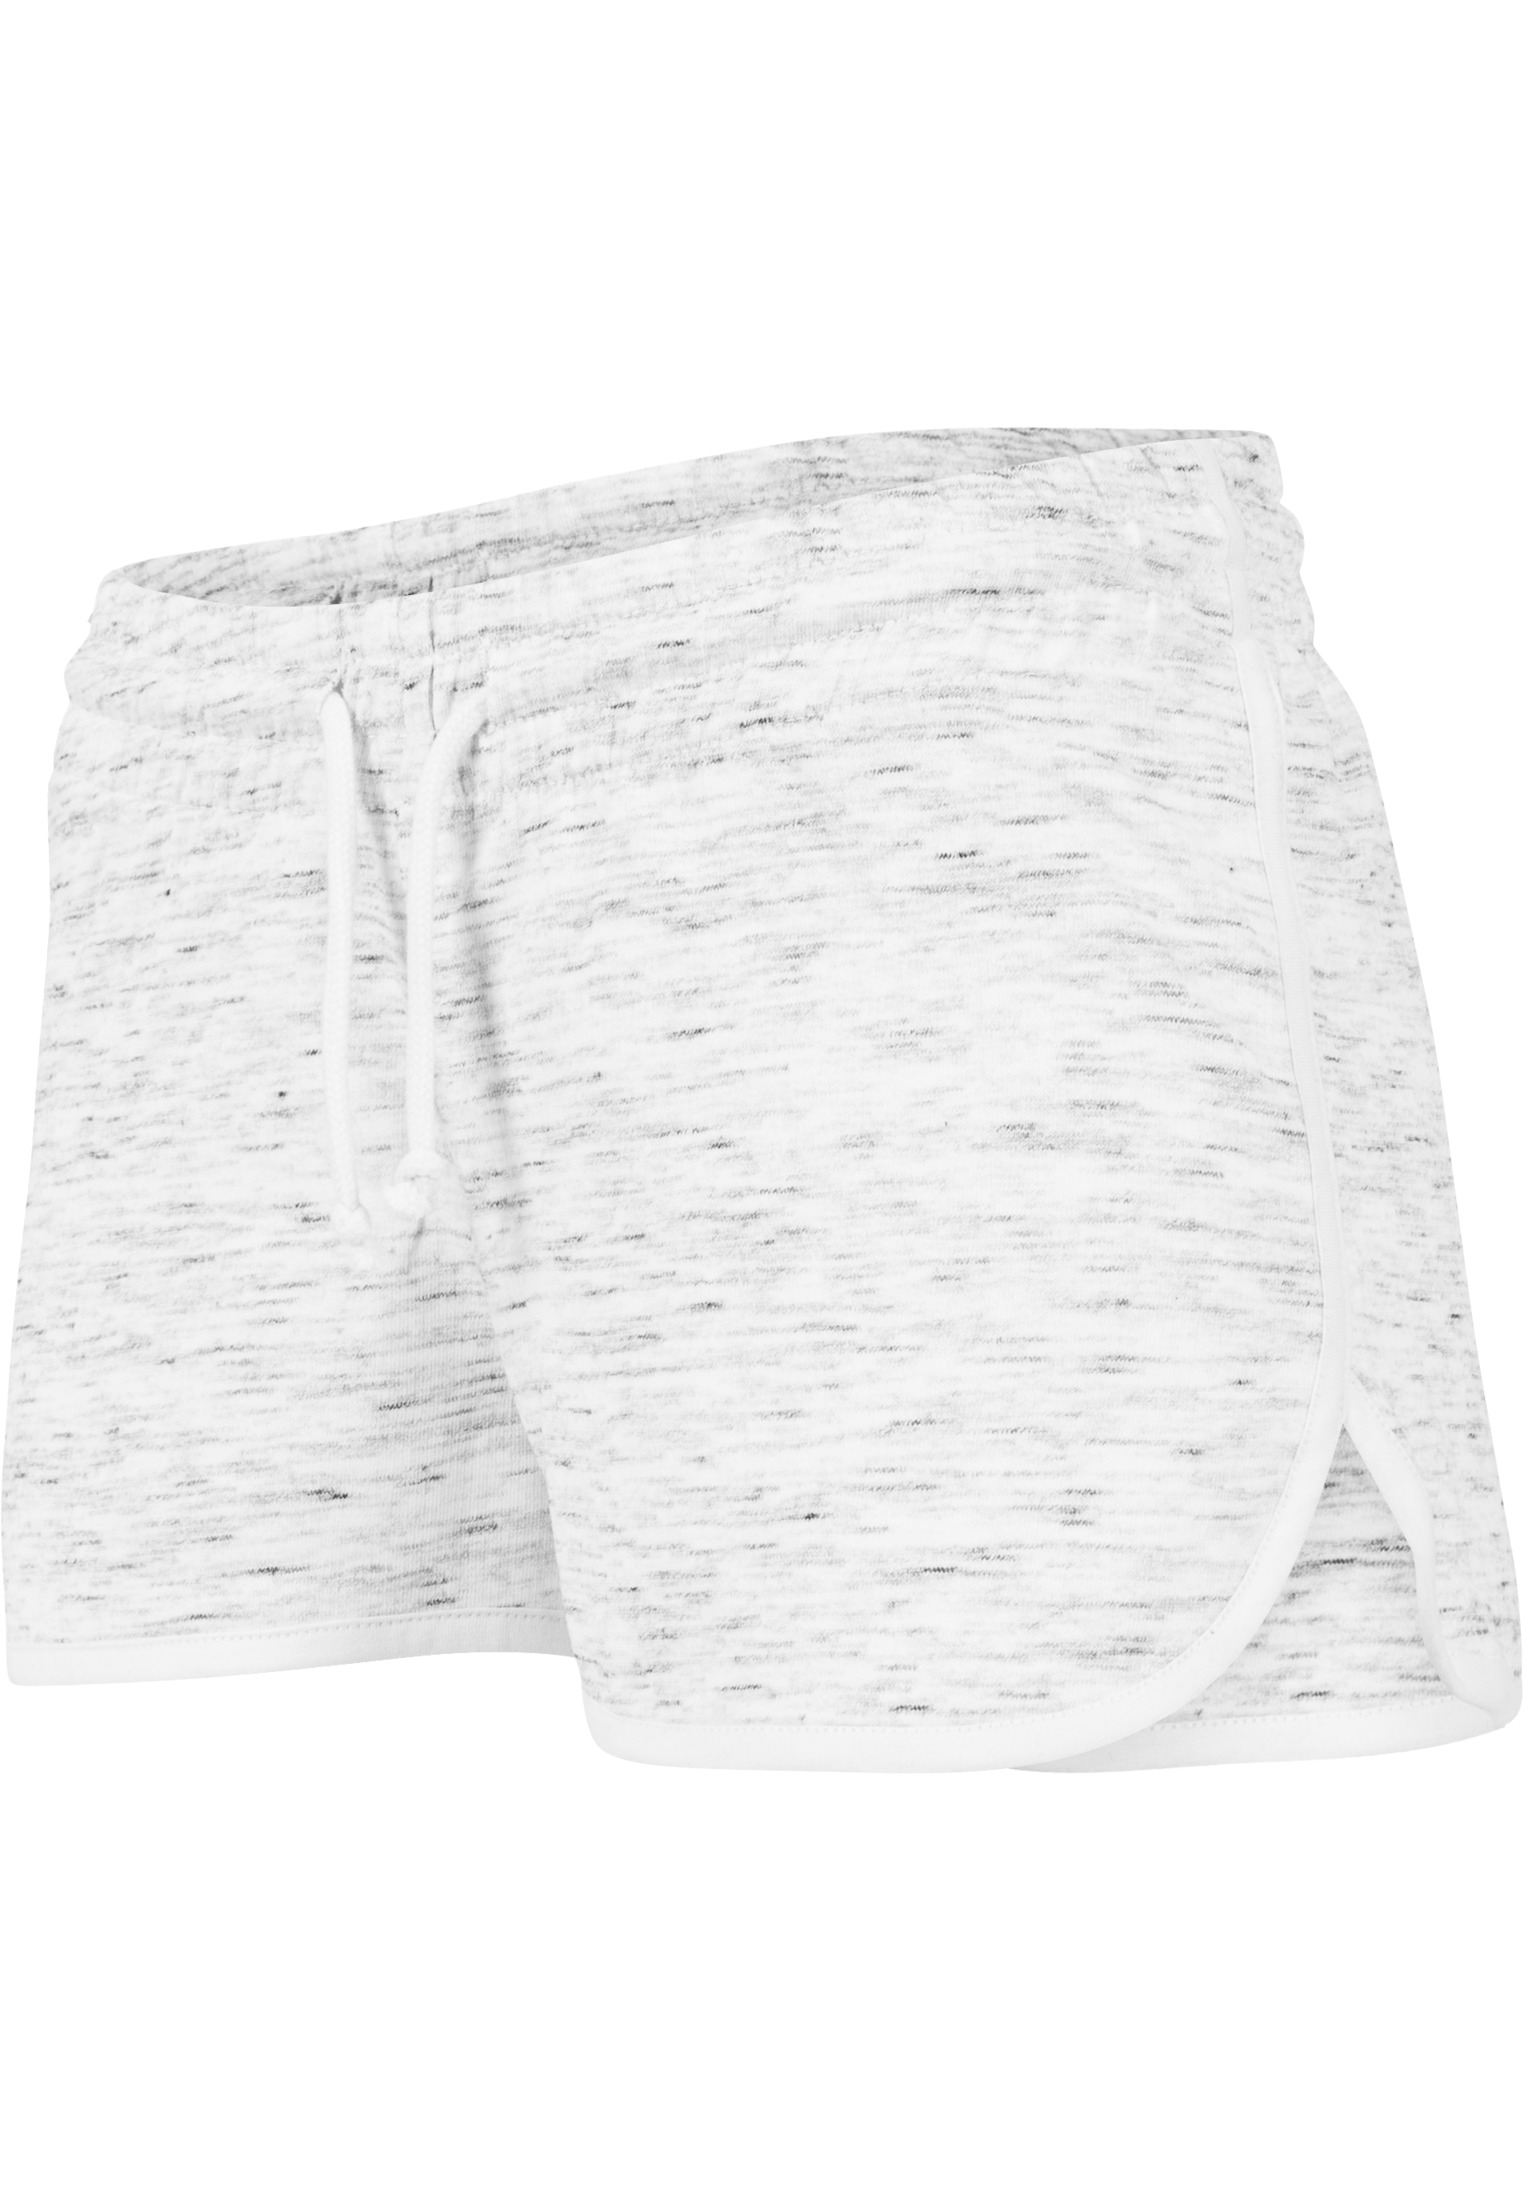 Kurze Hosen Ladies Space Dye Hotpants in Farbe wht/blk/wht